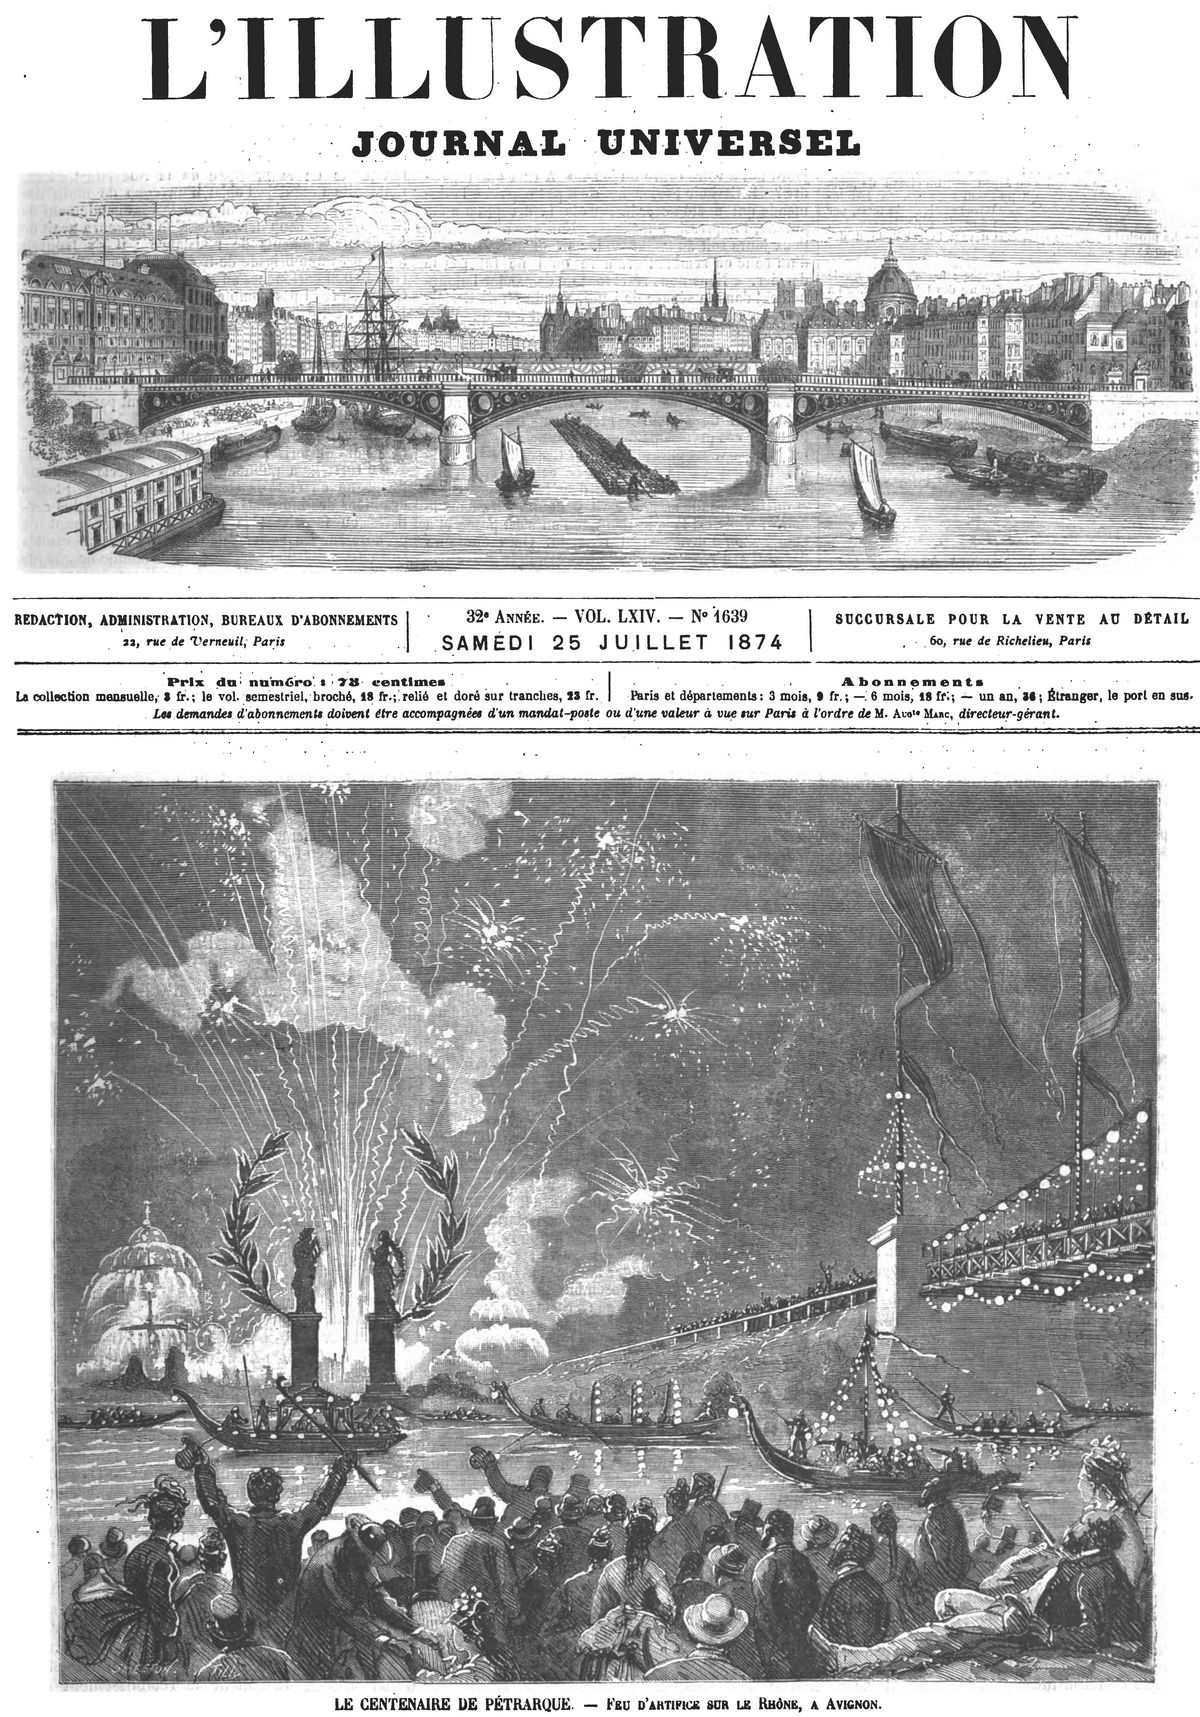 Le centenaire de Pétrarque : feu d’artifice sur le Rhône, à Avignon.